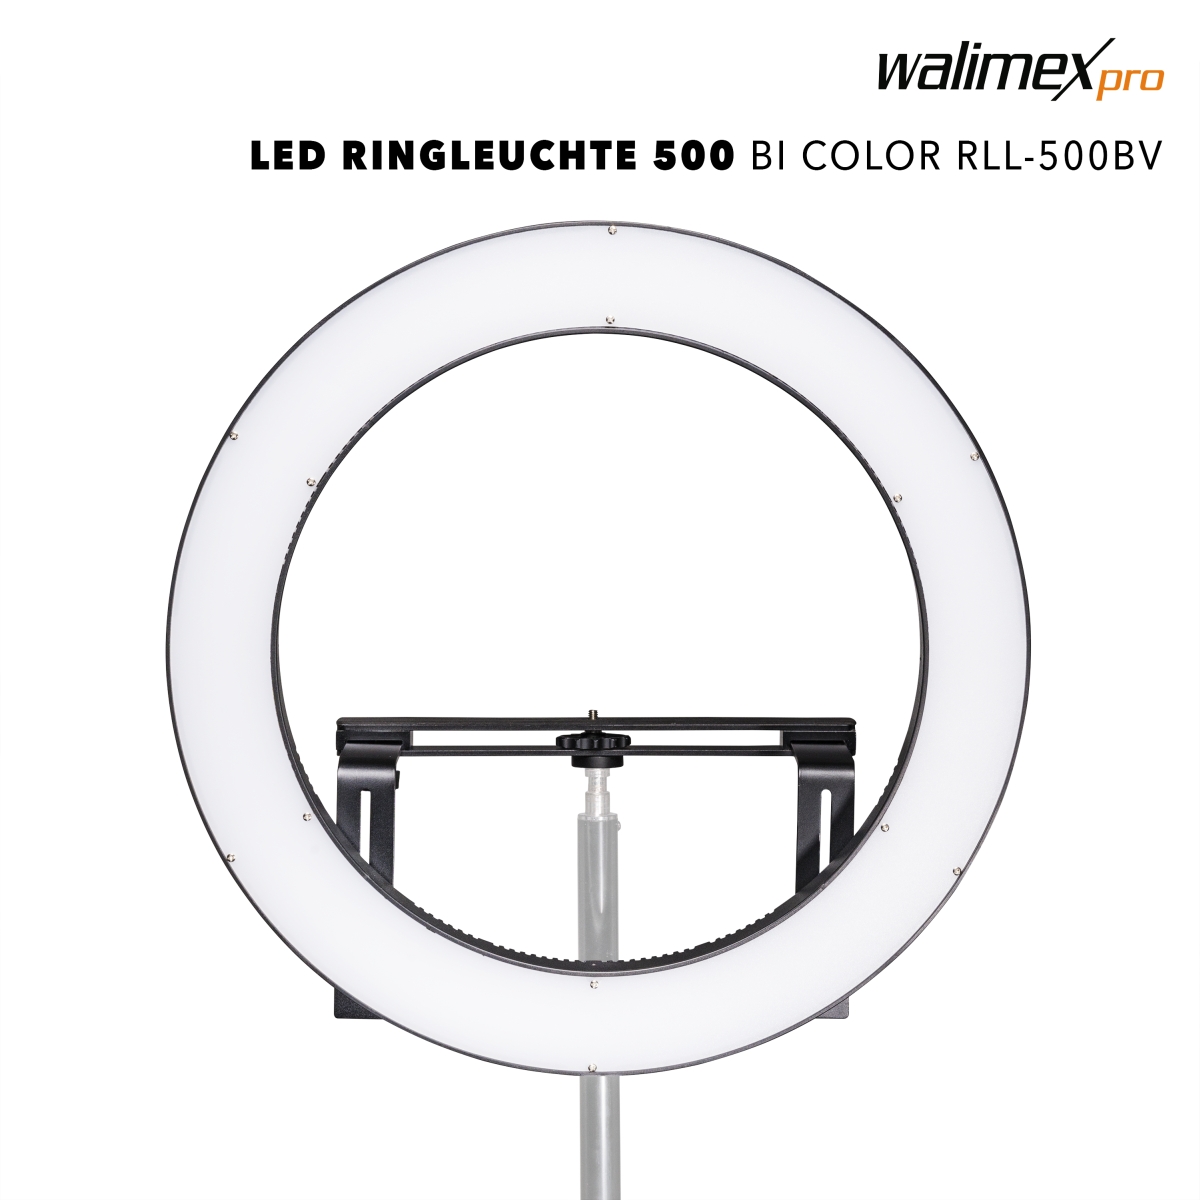 Walimex pro LED Ringleuchte 500 Bi Color Set1